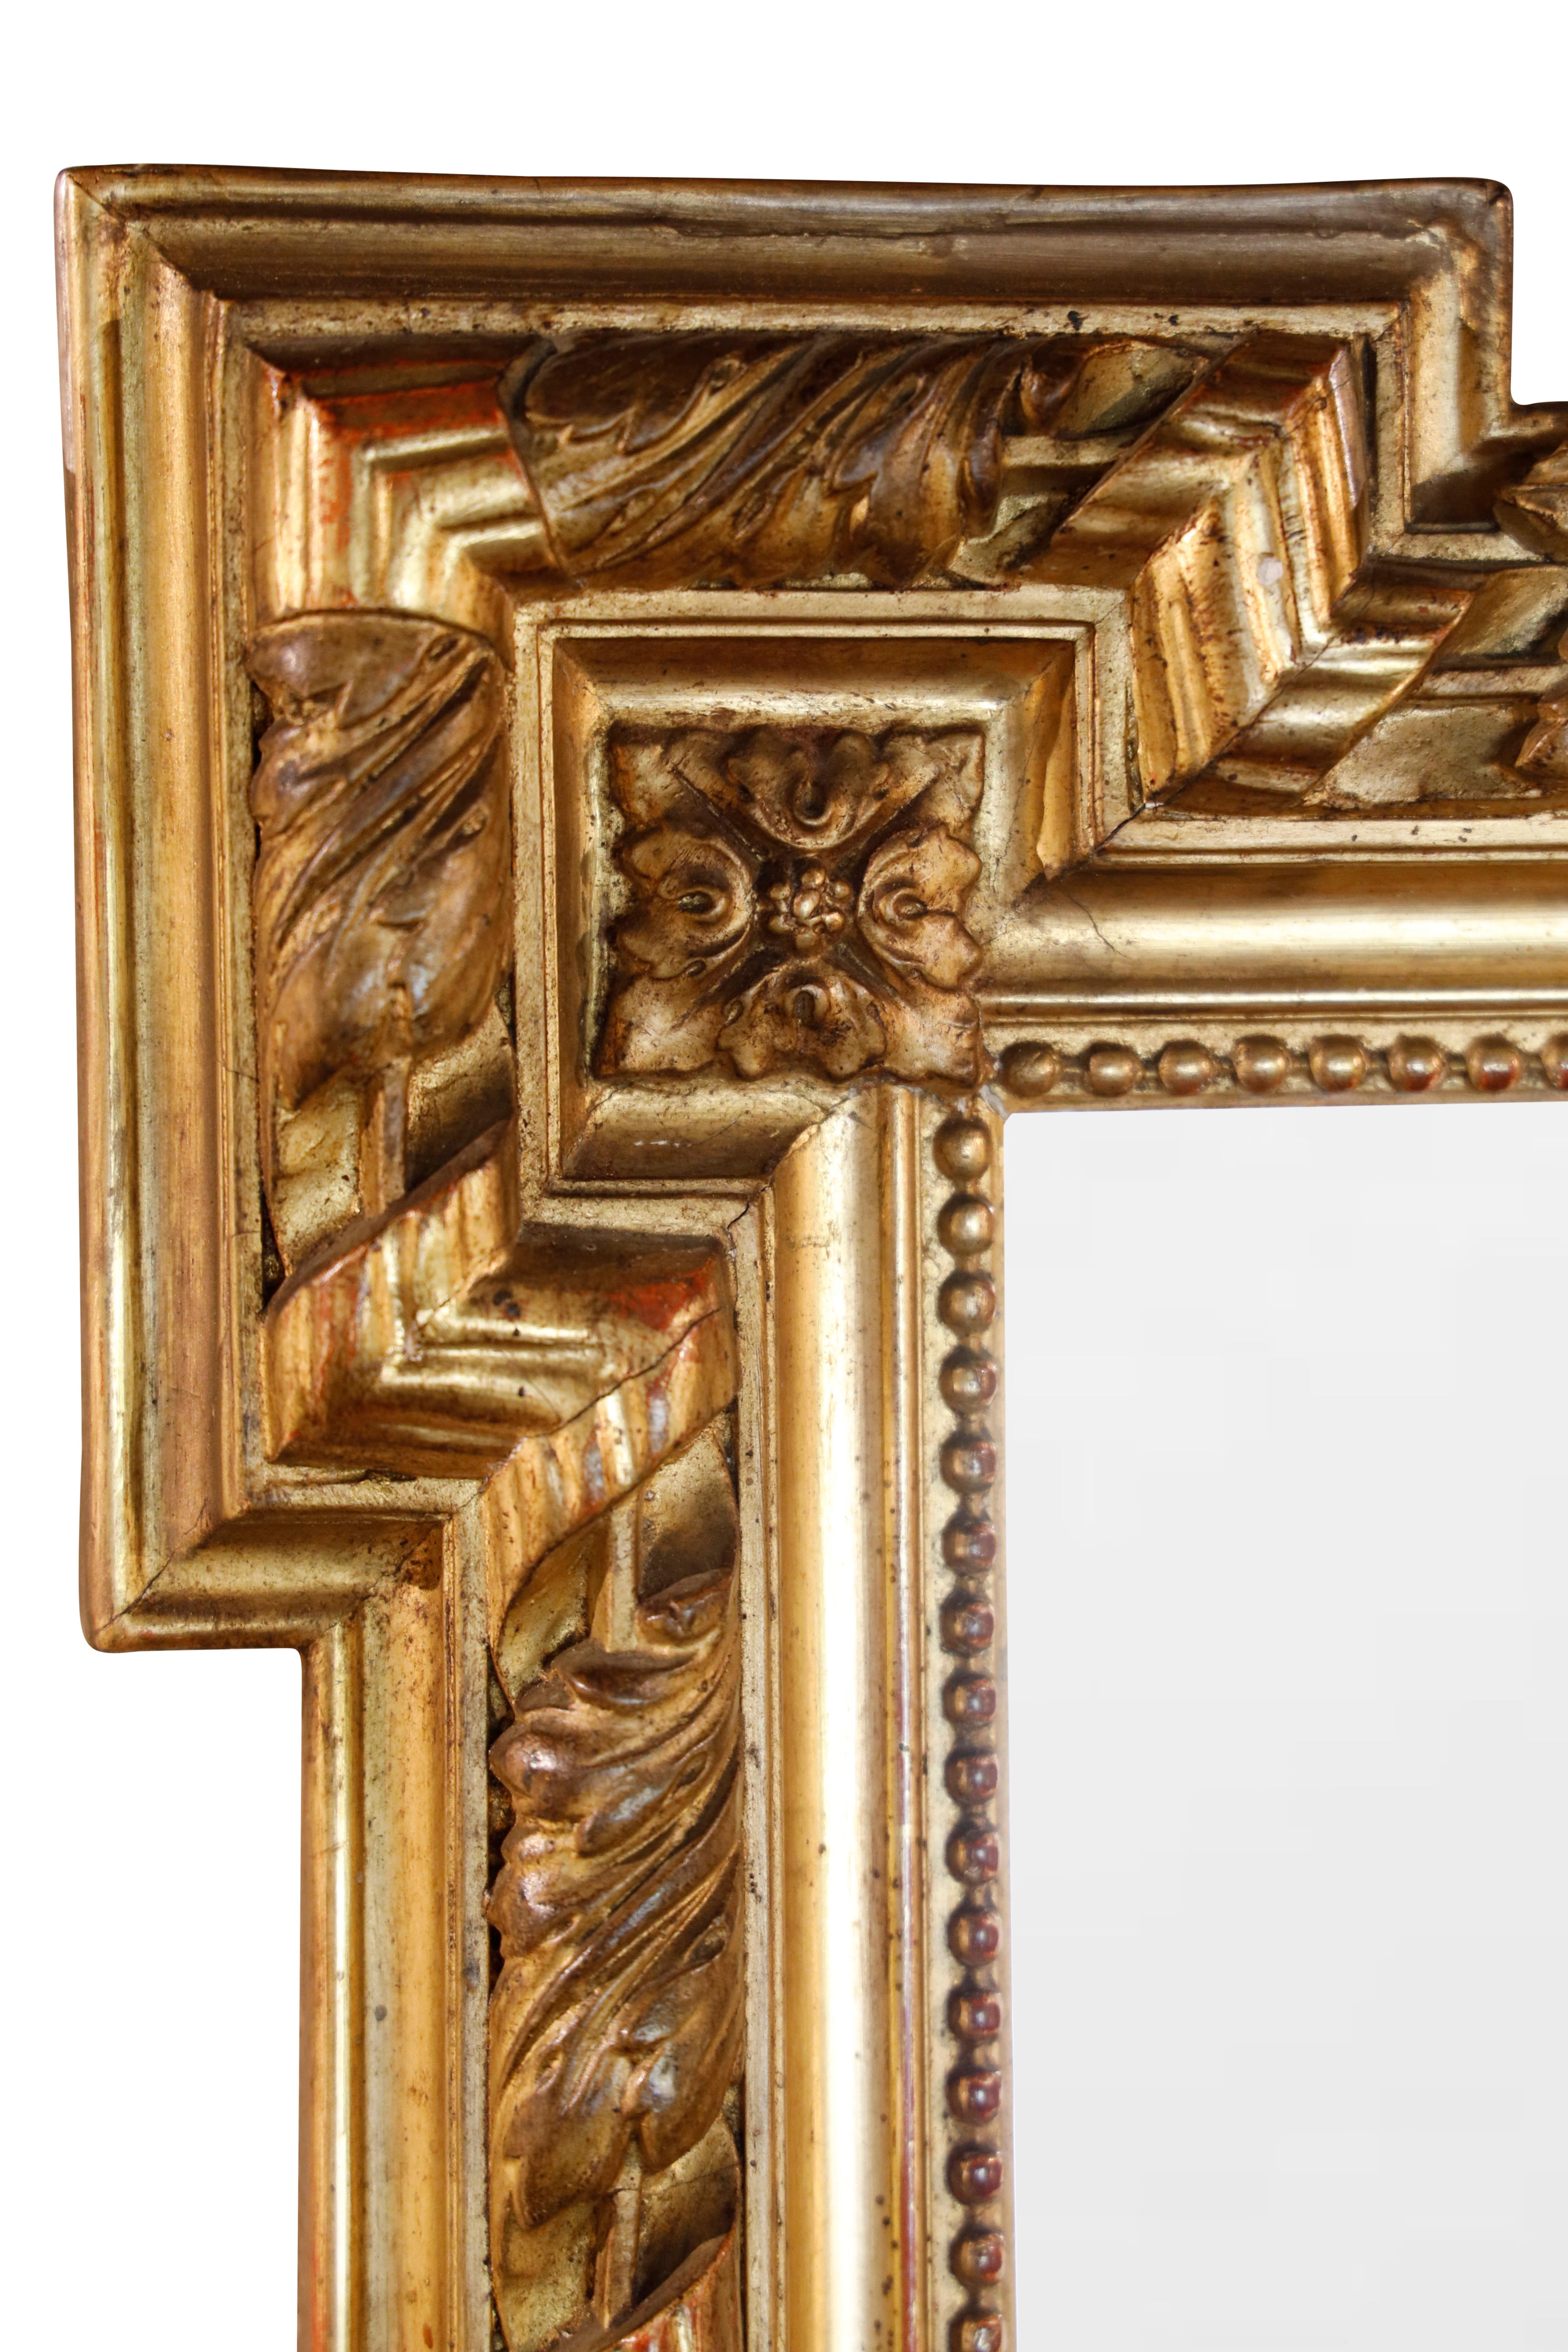 Miroir en bois doré français du 19ème siècle avec verre d'origine.  Cadre en bois doré à sculptures moulurées et biseautées décorées de motifs de feuillage et d'une crête centrale en forme de feuille.